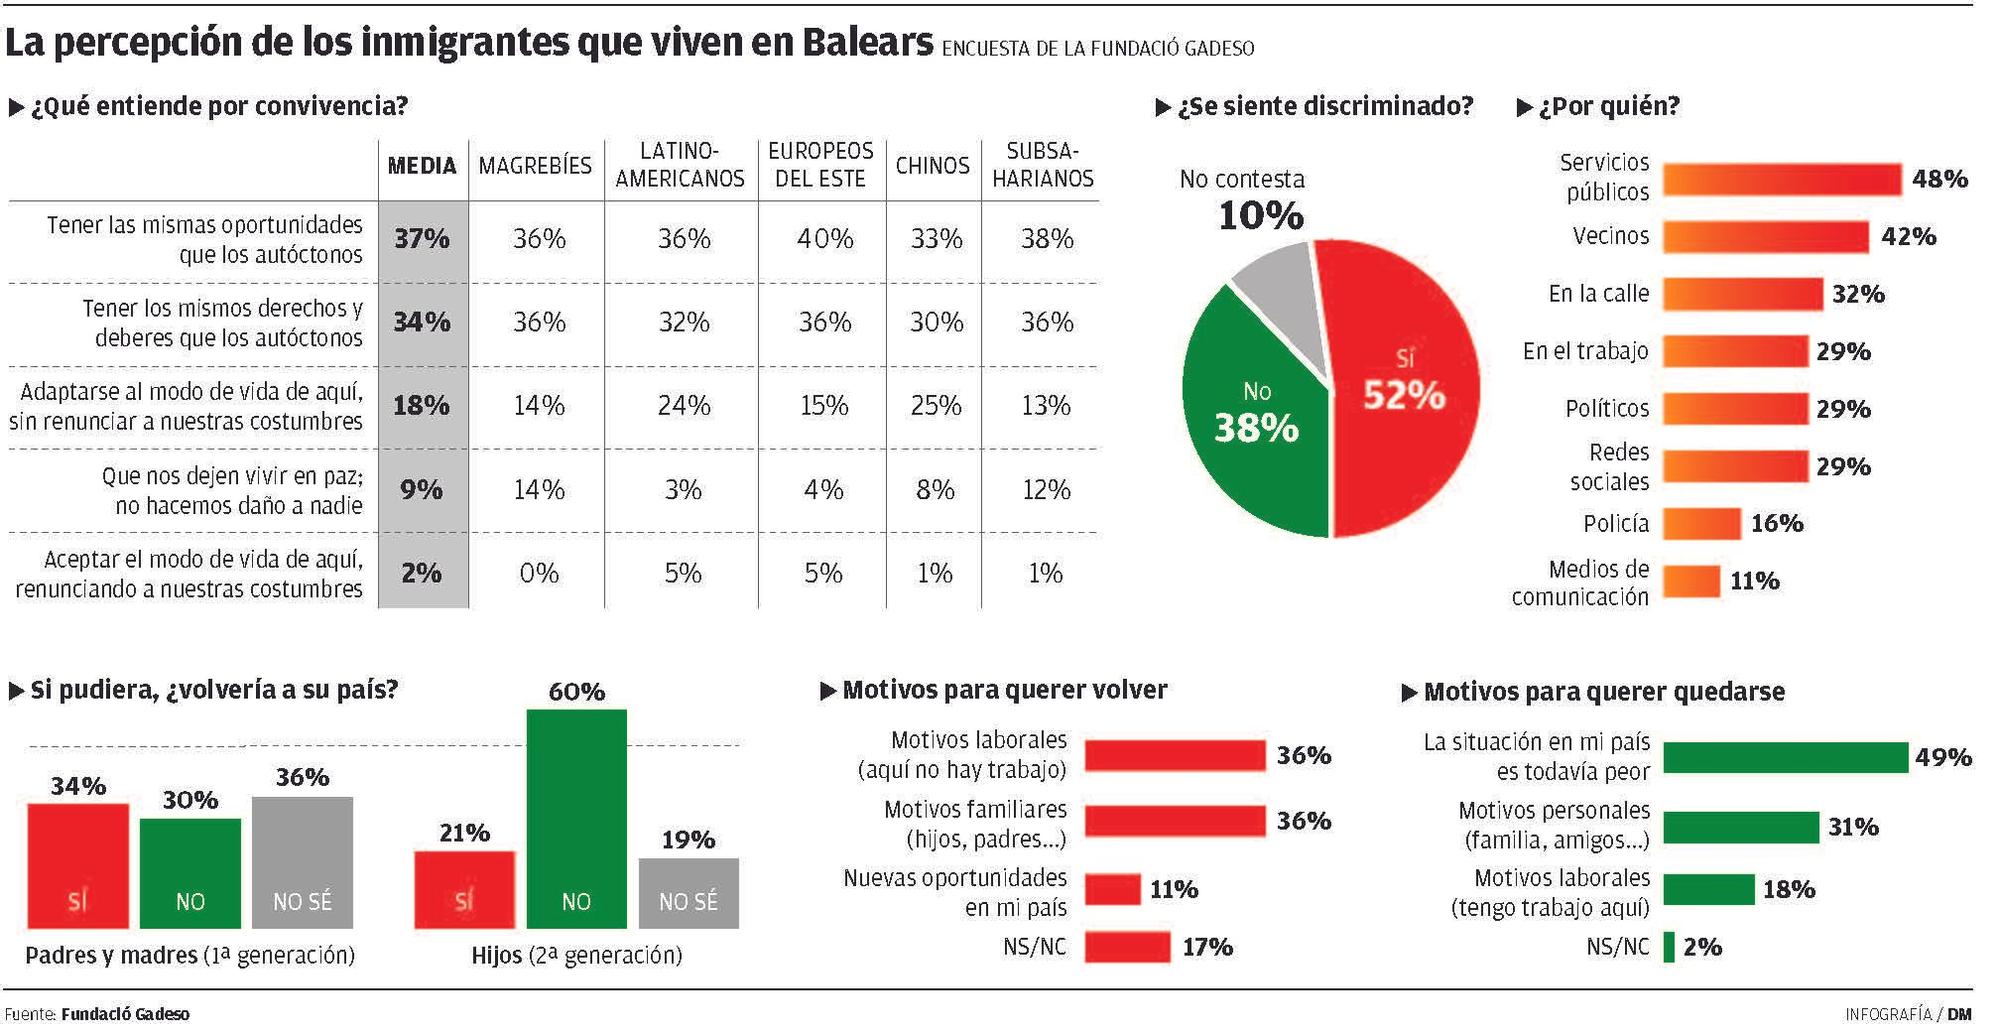 La percepción de los inmigrantes que viven en Baleares, encuesta de la Fundació Gadeso